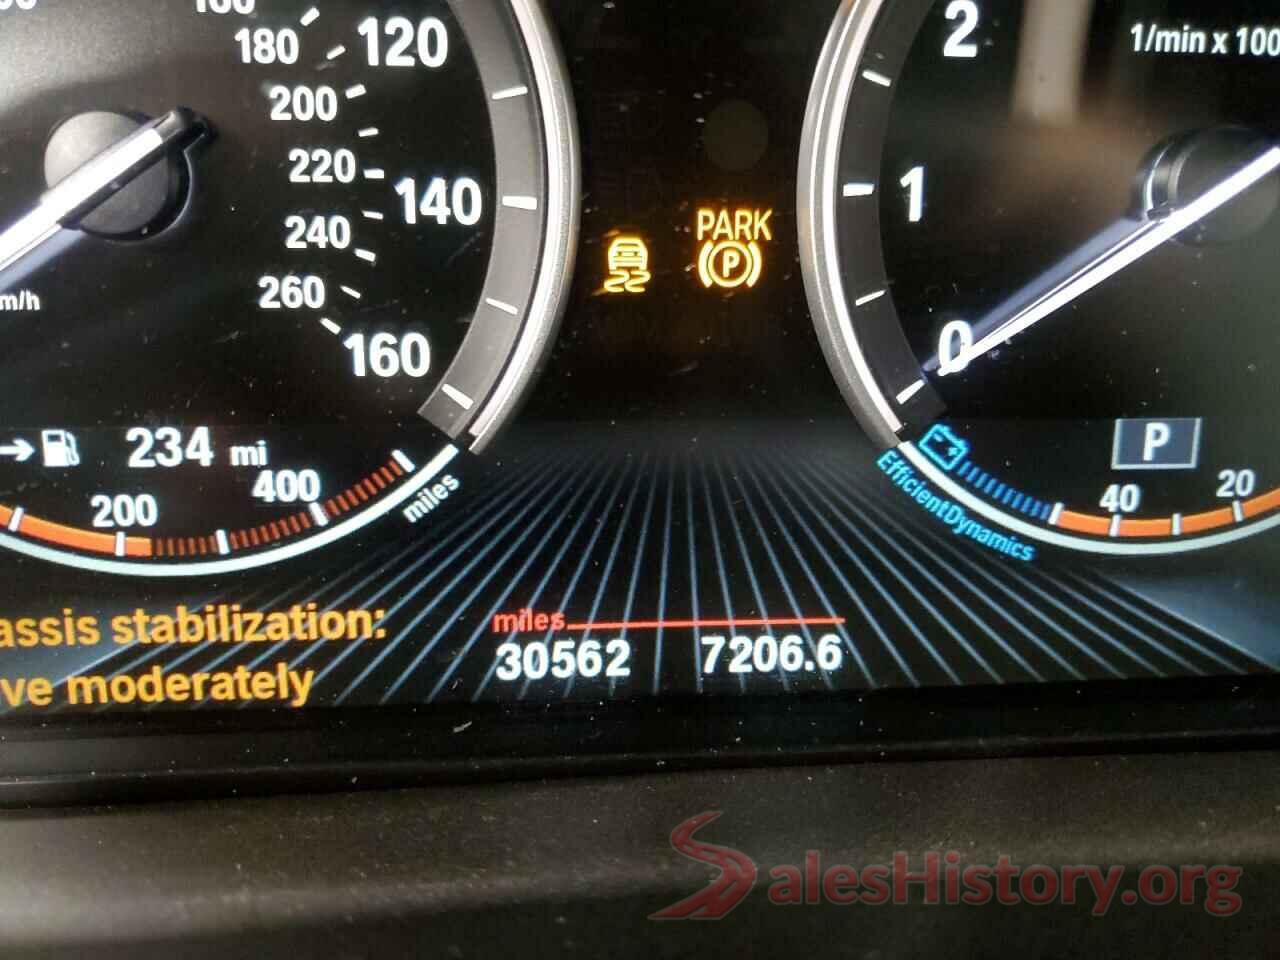 5UXKR0C55J0X91521 2018 BMW X5